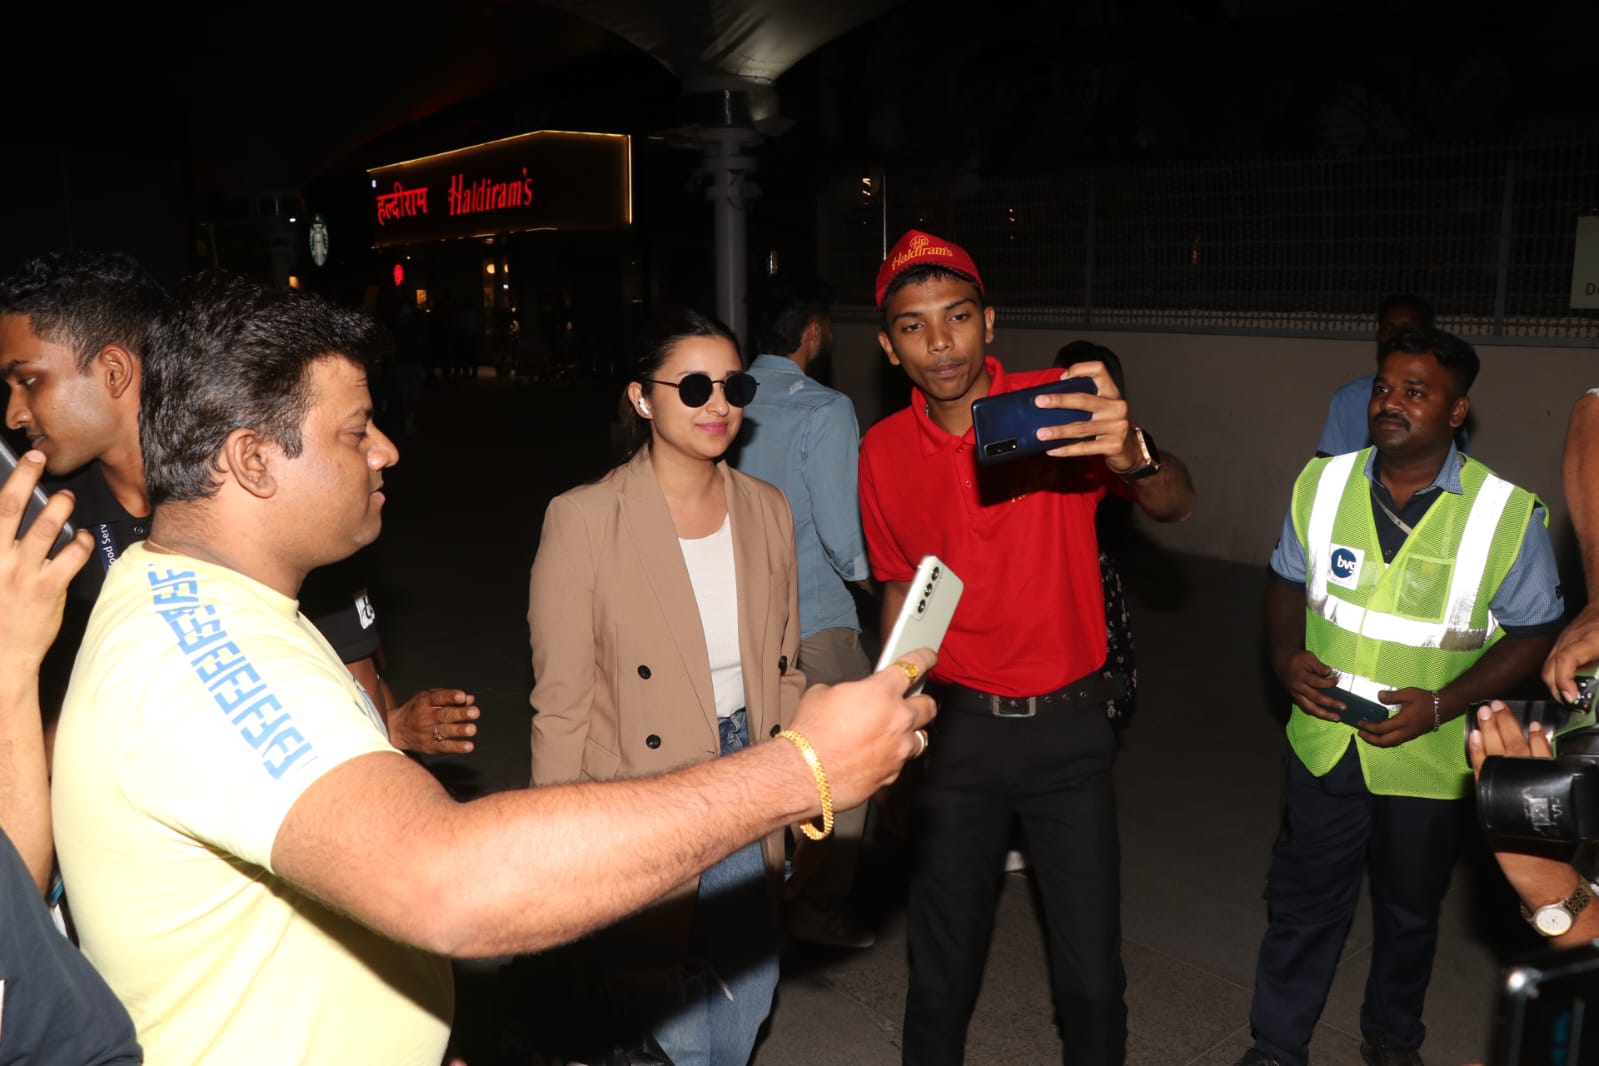 Parineeti Chopra Returns To Mumbai Post Her Engagement With Raghav Chadha, Poses With Fans At Airport